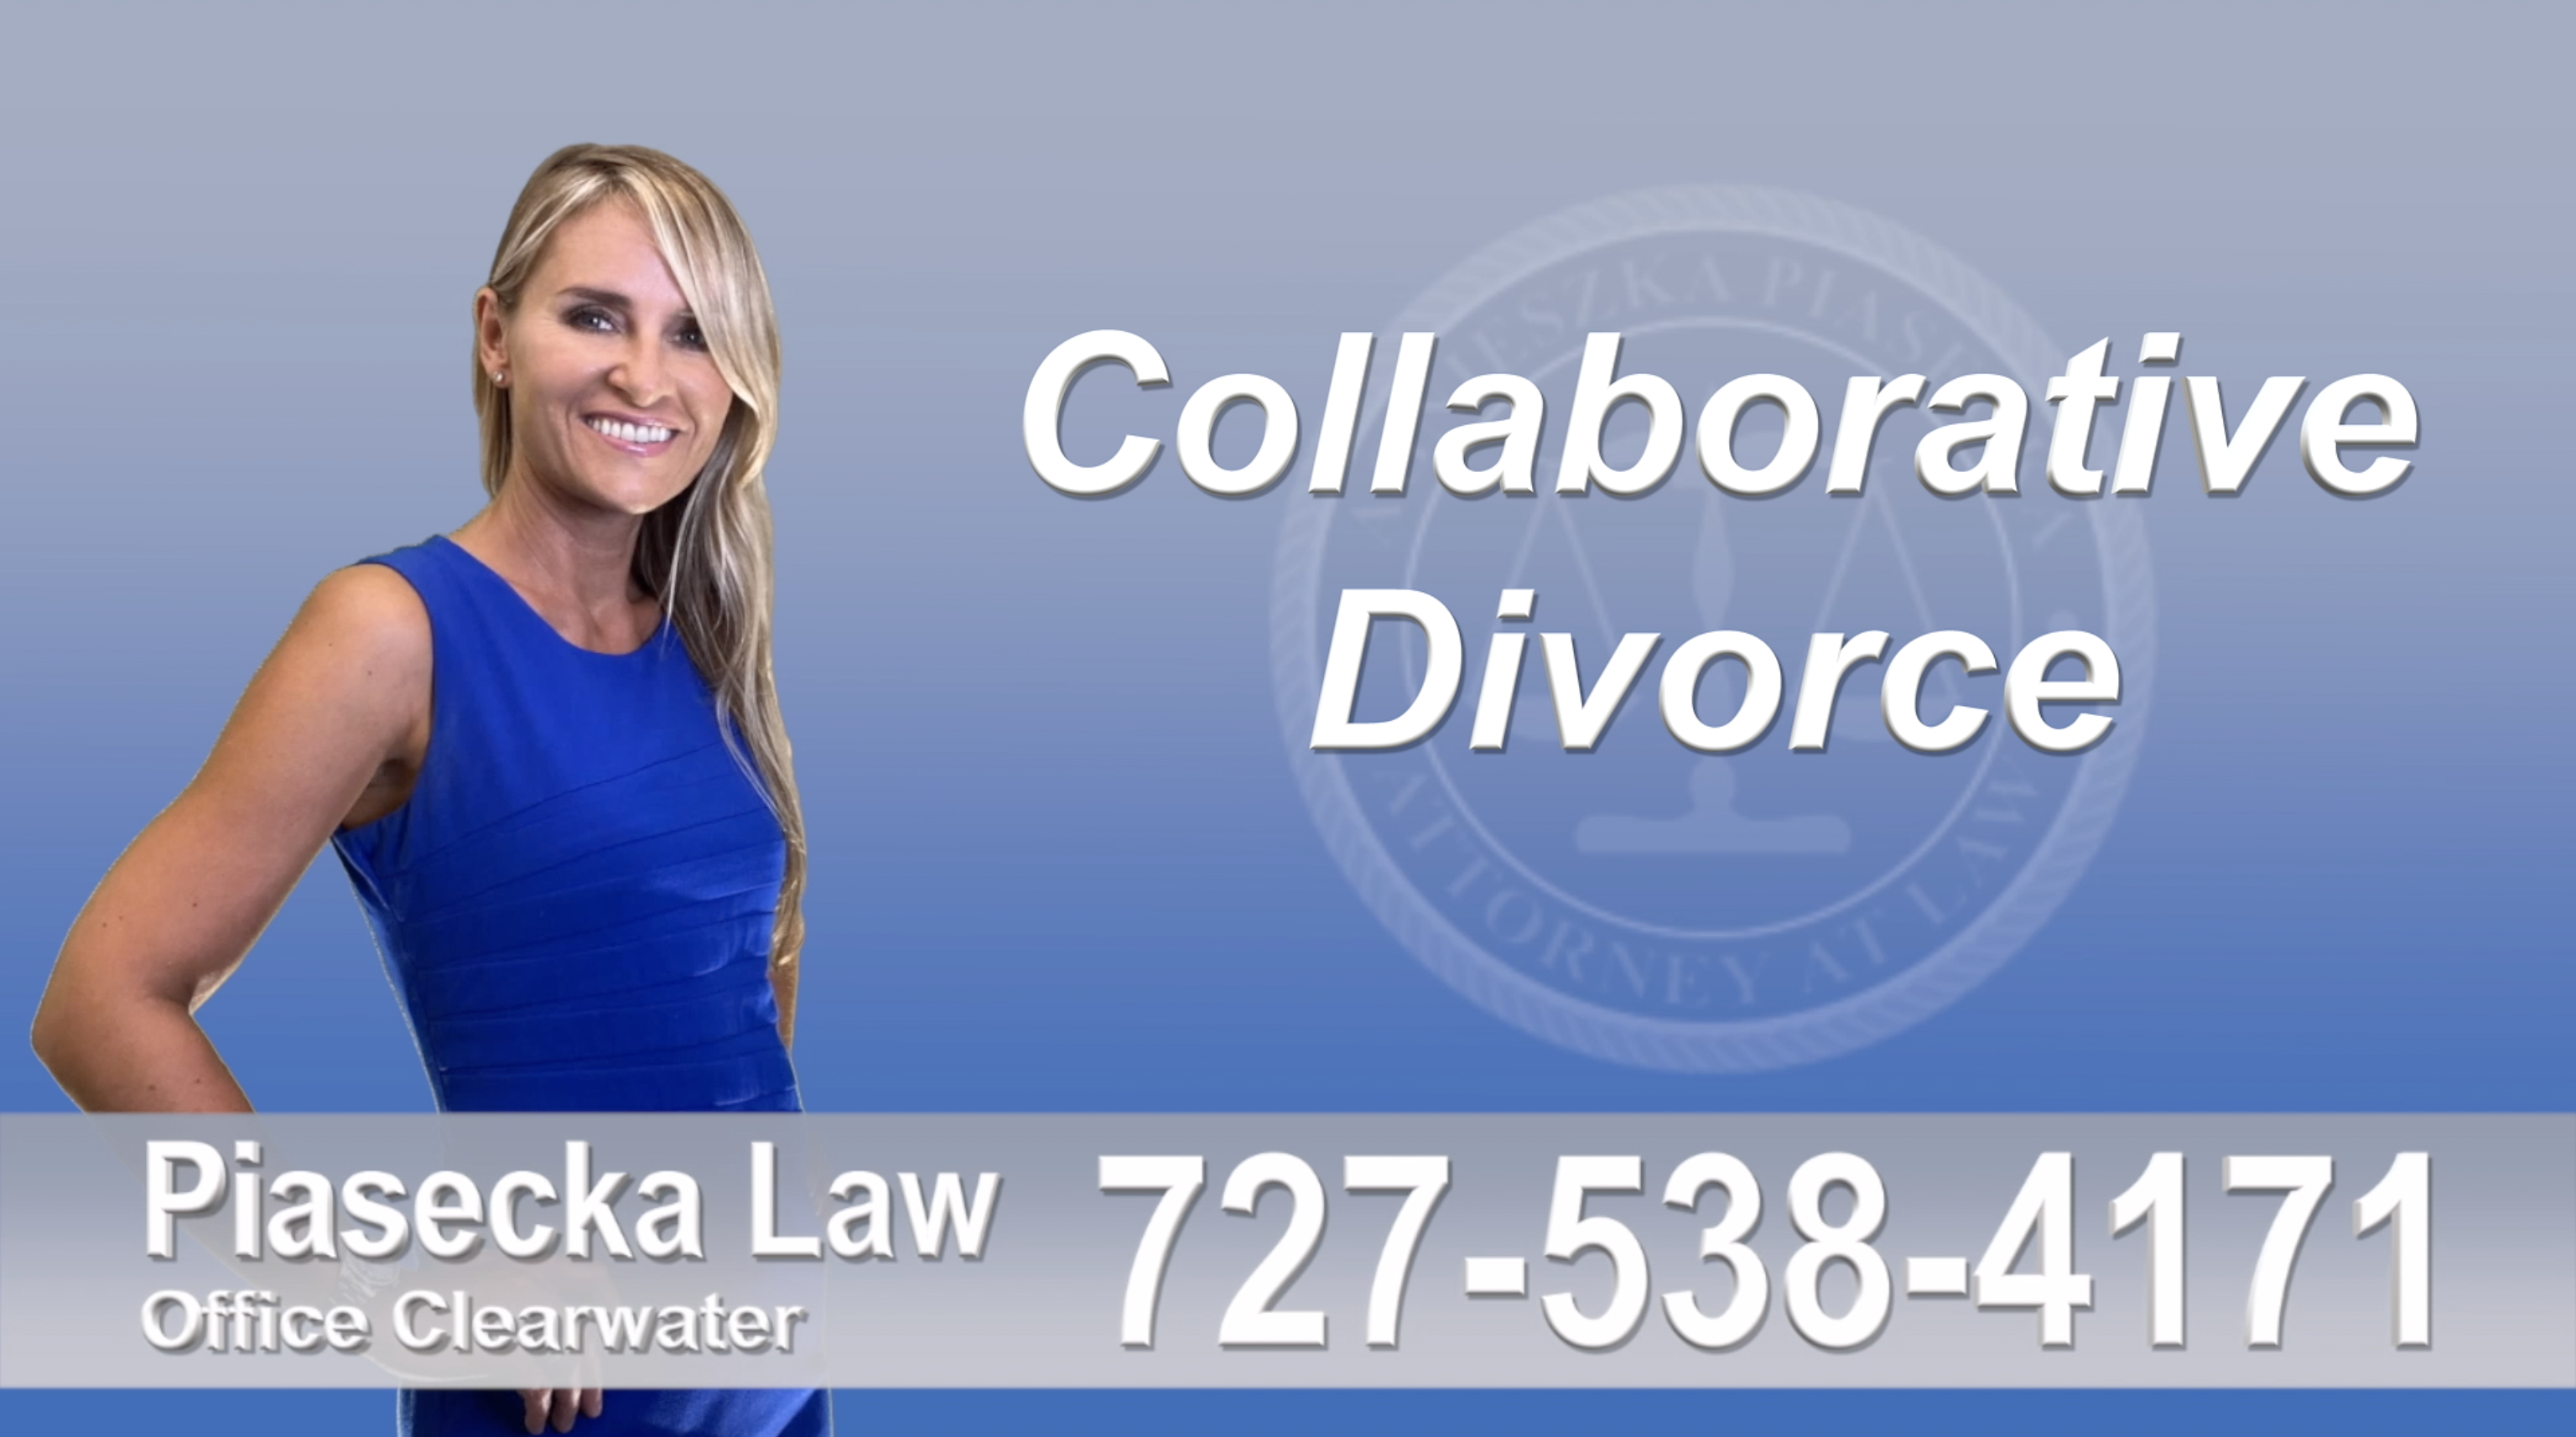 Palm Harbor Collaborative, Attorney, Agnieszka, Piasecka, Prawnik, Rozwodowy, Rozwód, Adwokat, Najlepszy, Best, Attorney, Divorce Lawyer